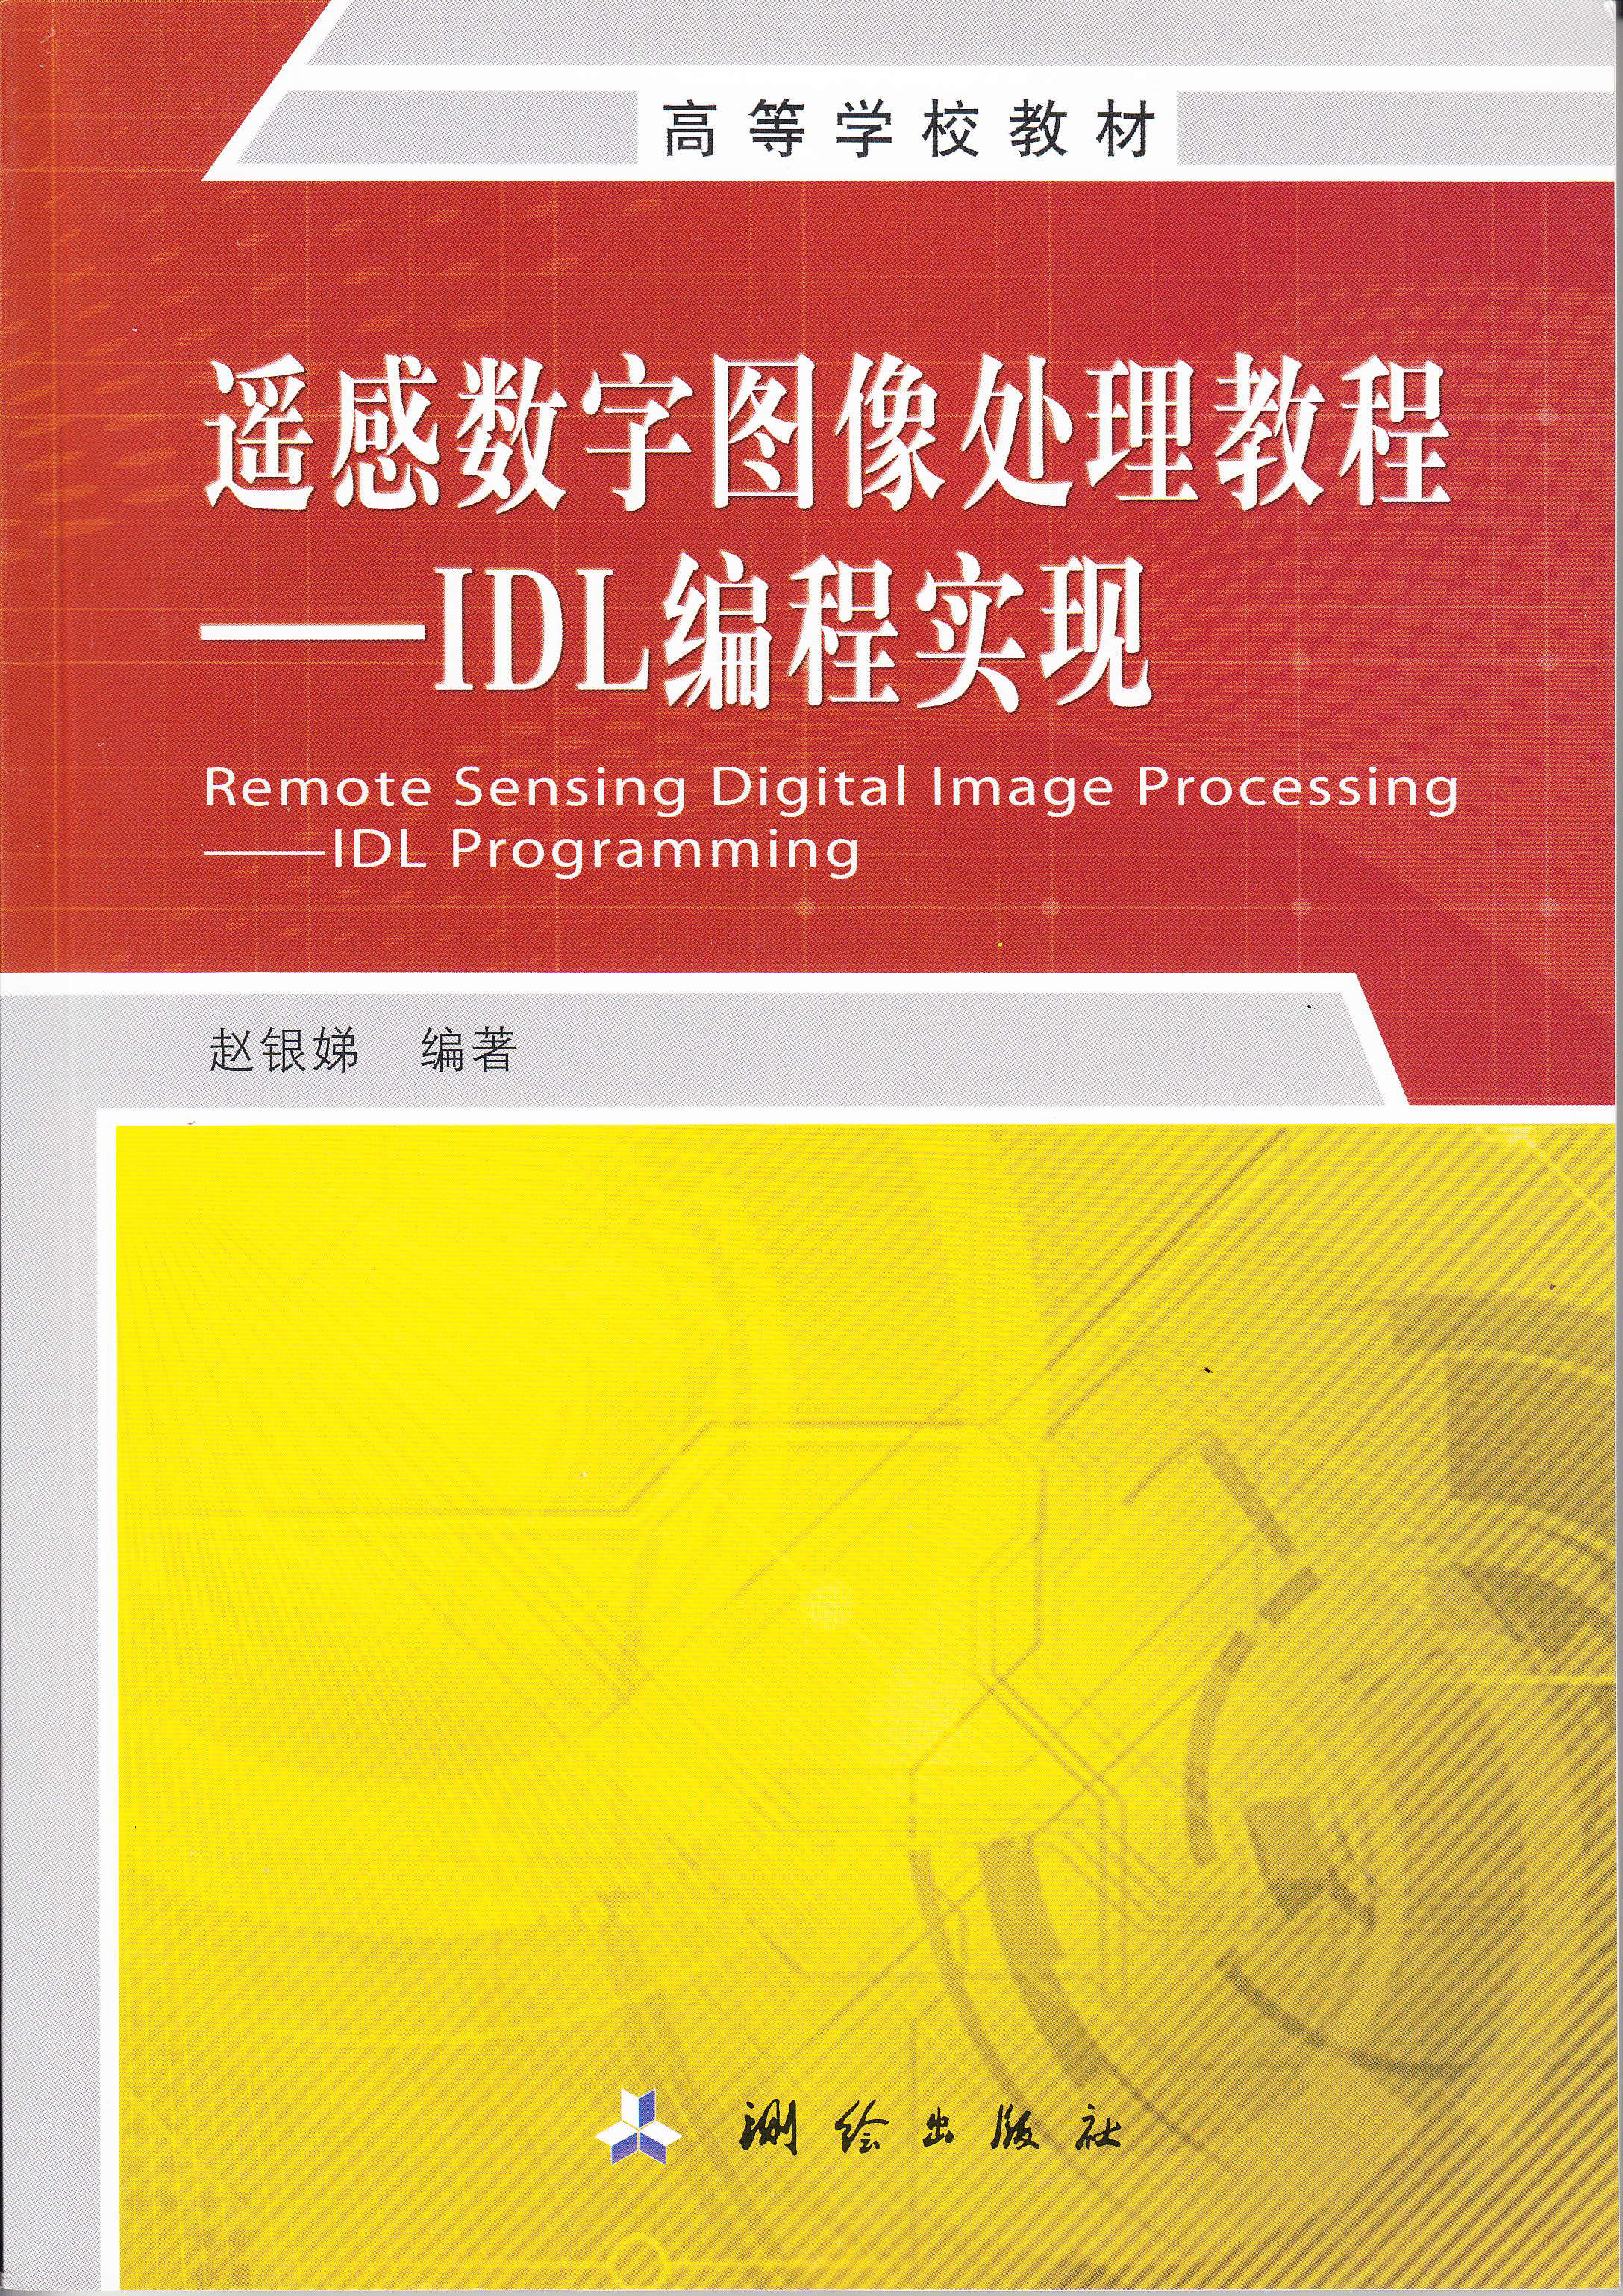 遙感數字圖像處理教程——IDL編程實現